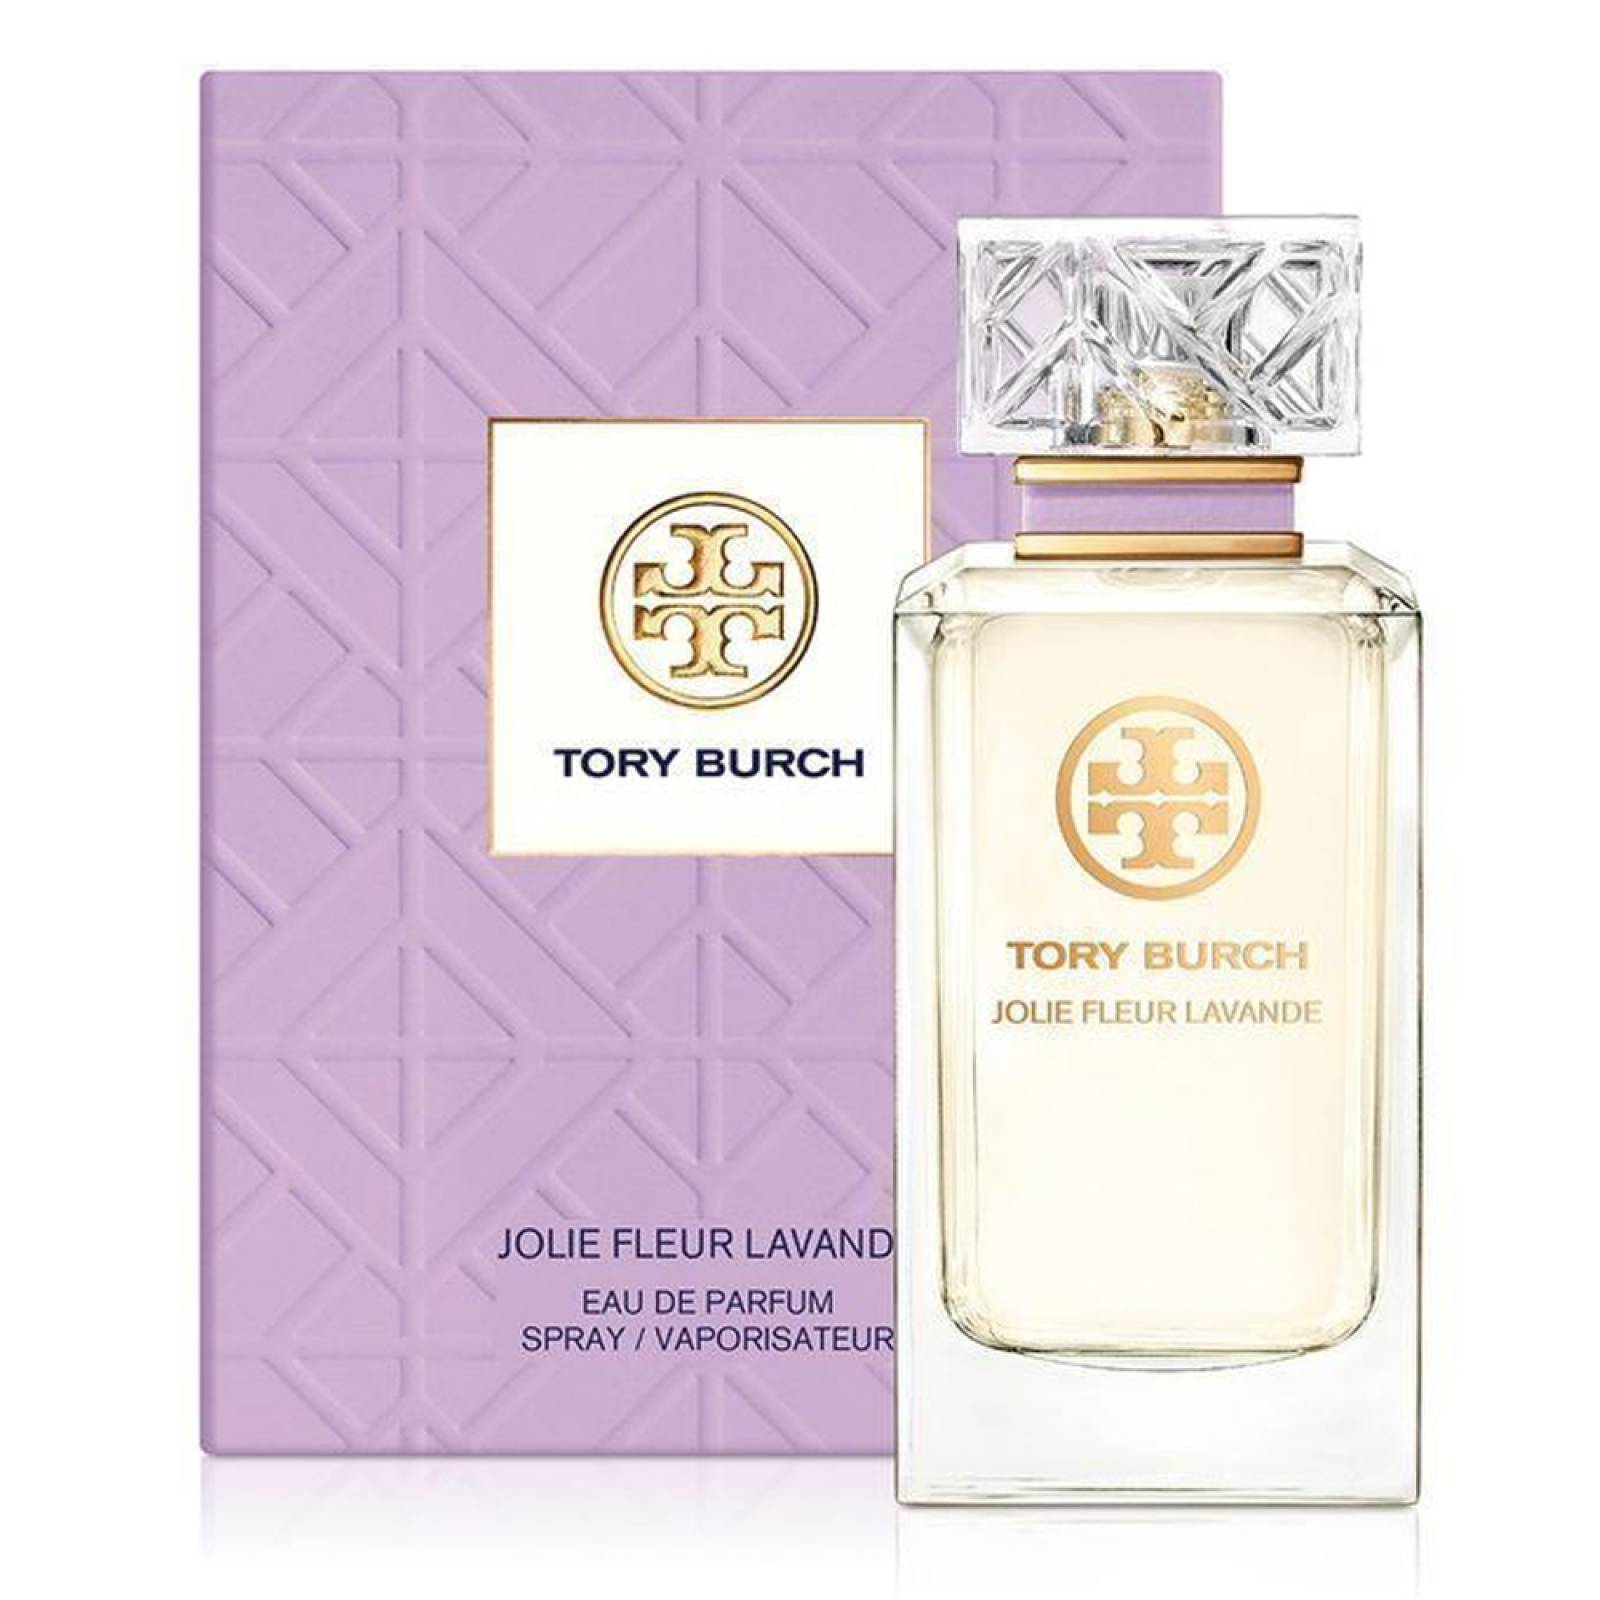 Tory Burch Jolie Fleur Lavande 100 ml Eau de Parfum de Tory Burch